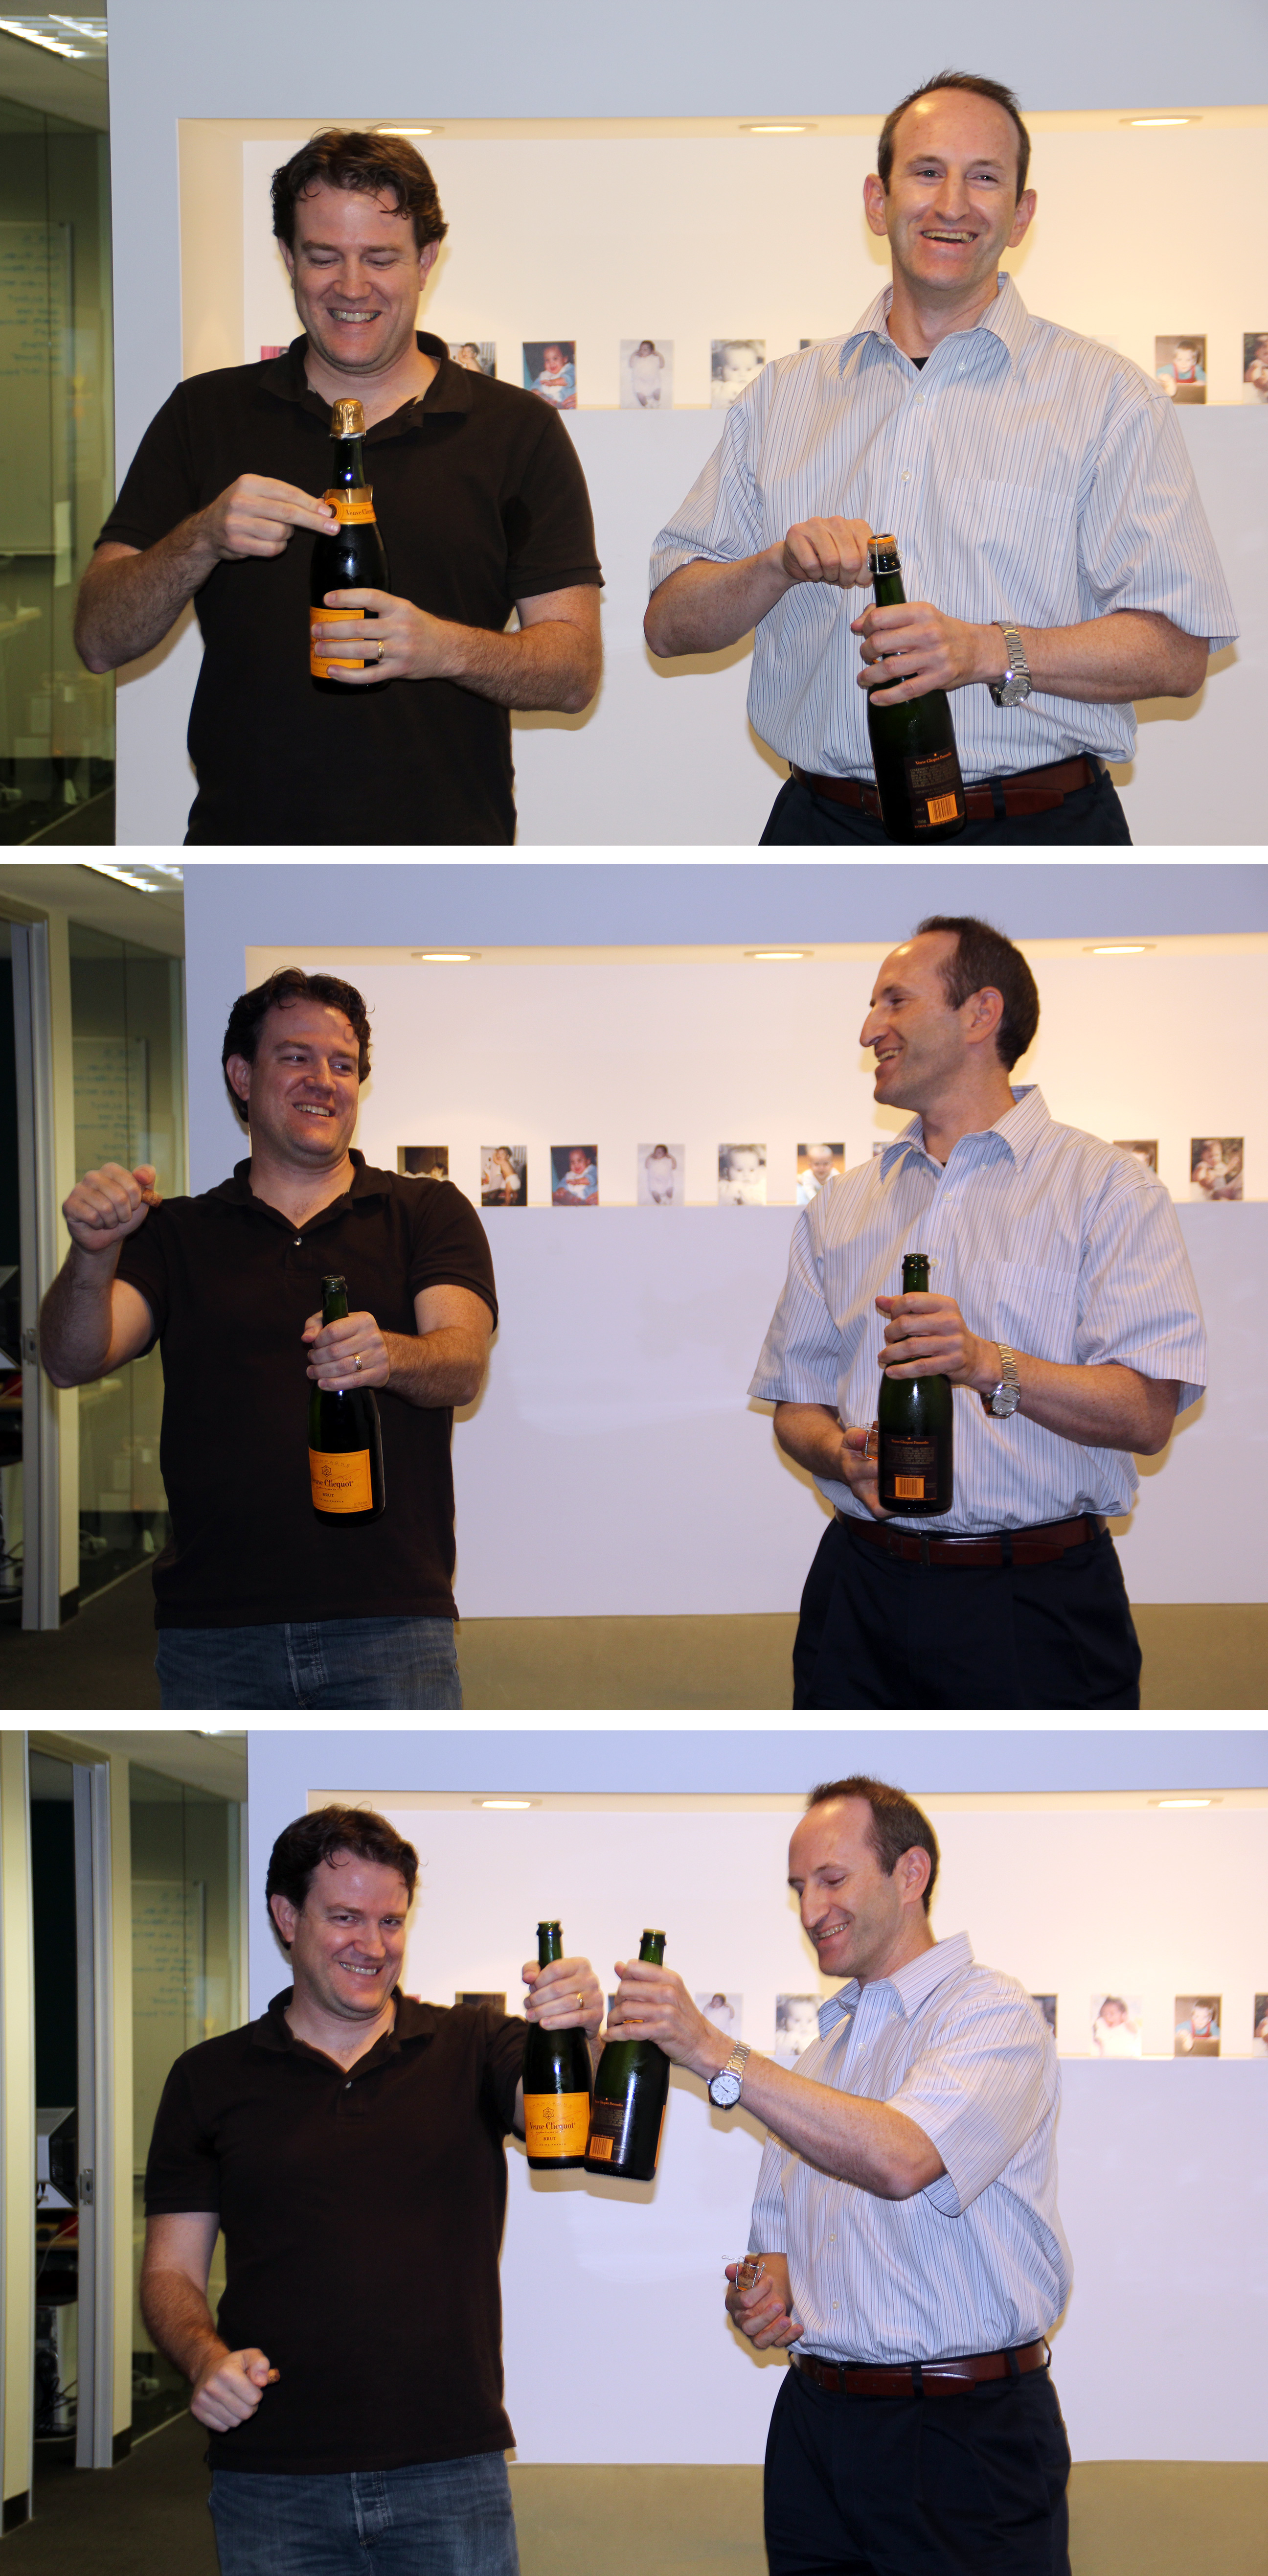 Le PDG de Geni.com, Noah Tutak (à gauche) célébrant avec le PDG de MyHeritage, Gilad Japhet (à droite)